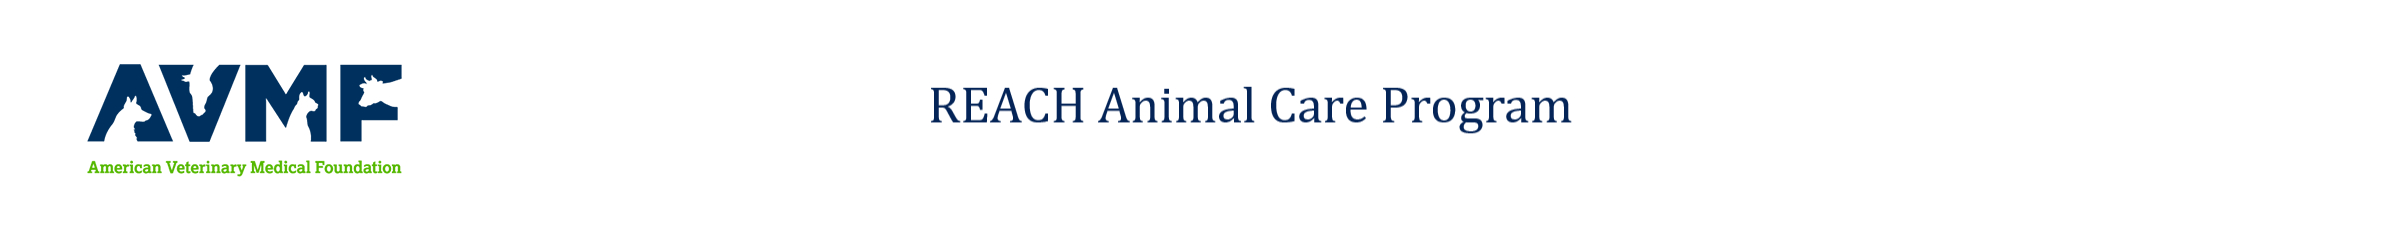 National Veterinary Charitable Care Grant Program logo